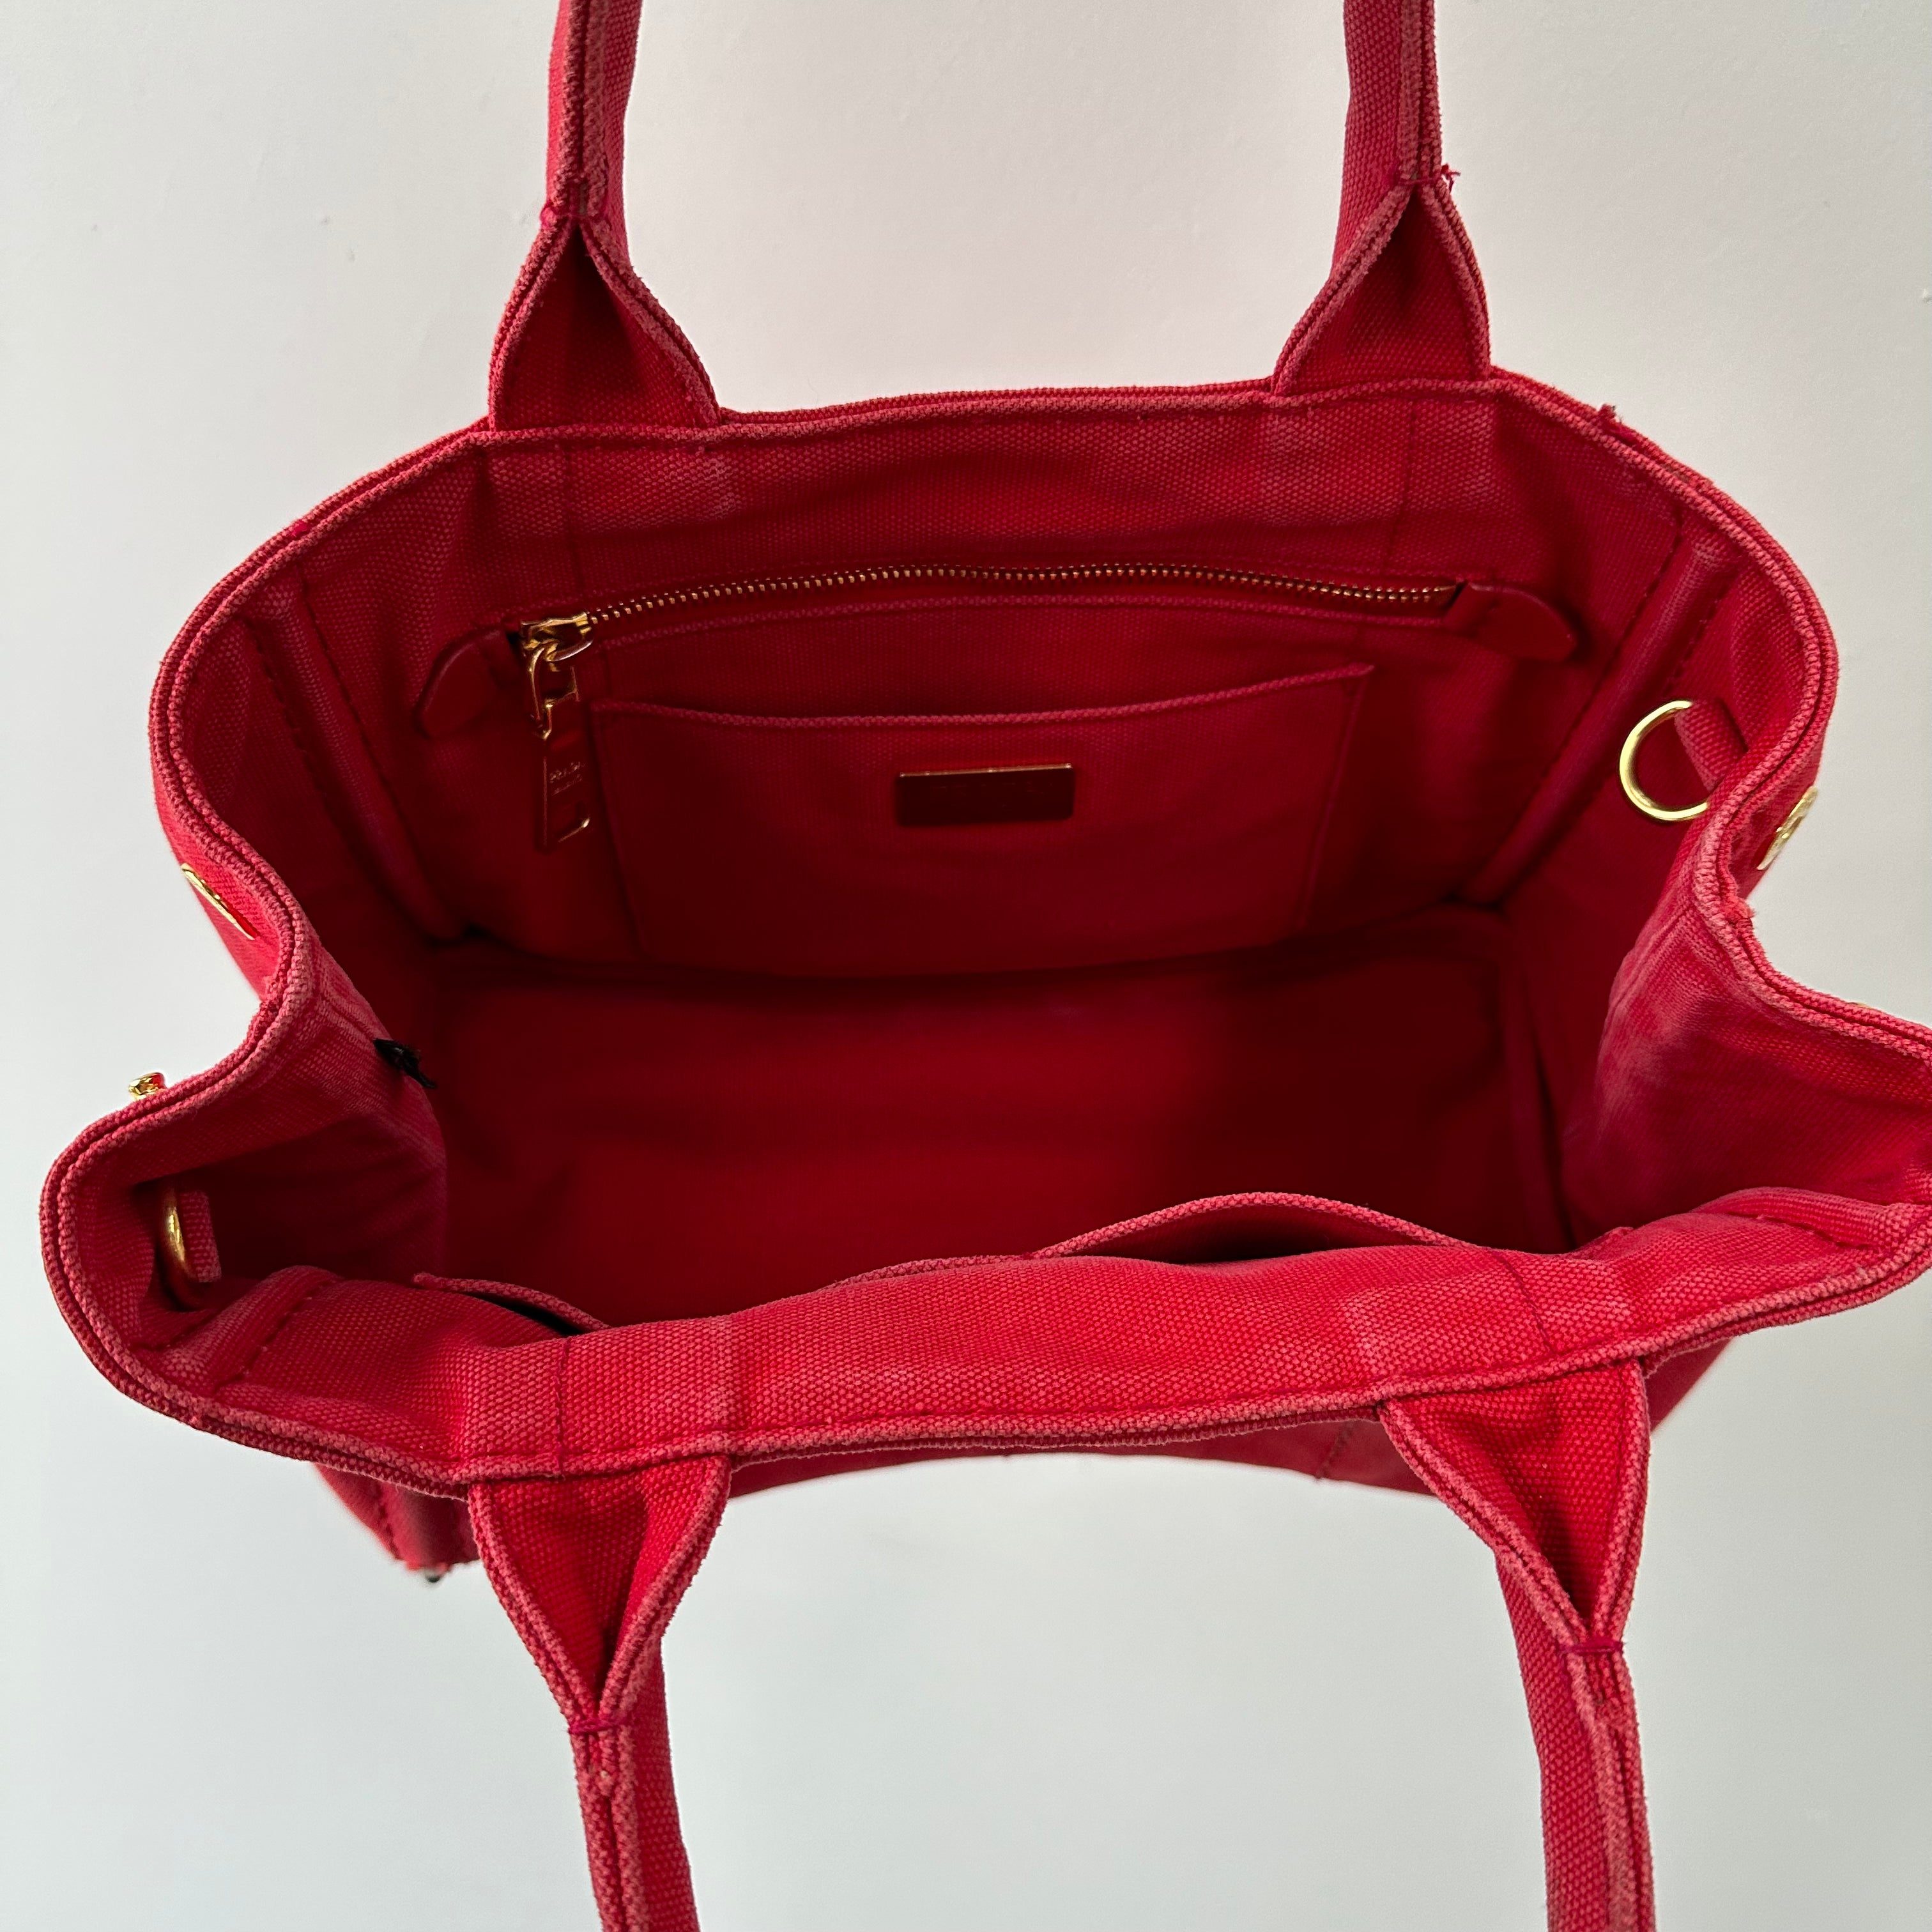 Prada Red Canapa Tote Bag